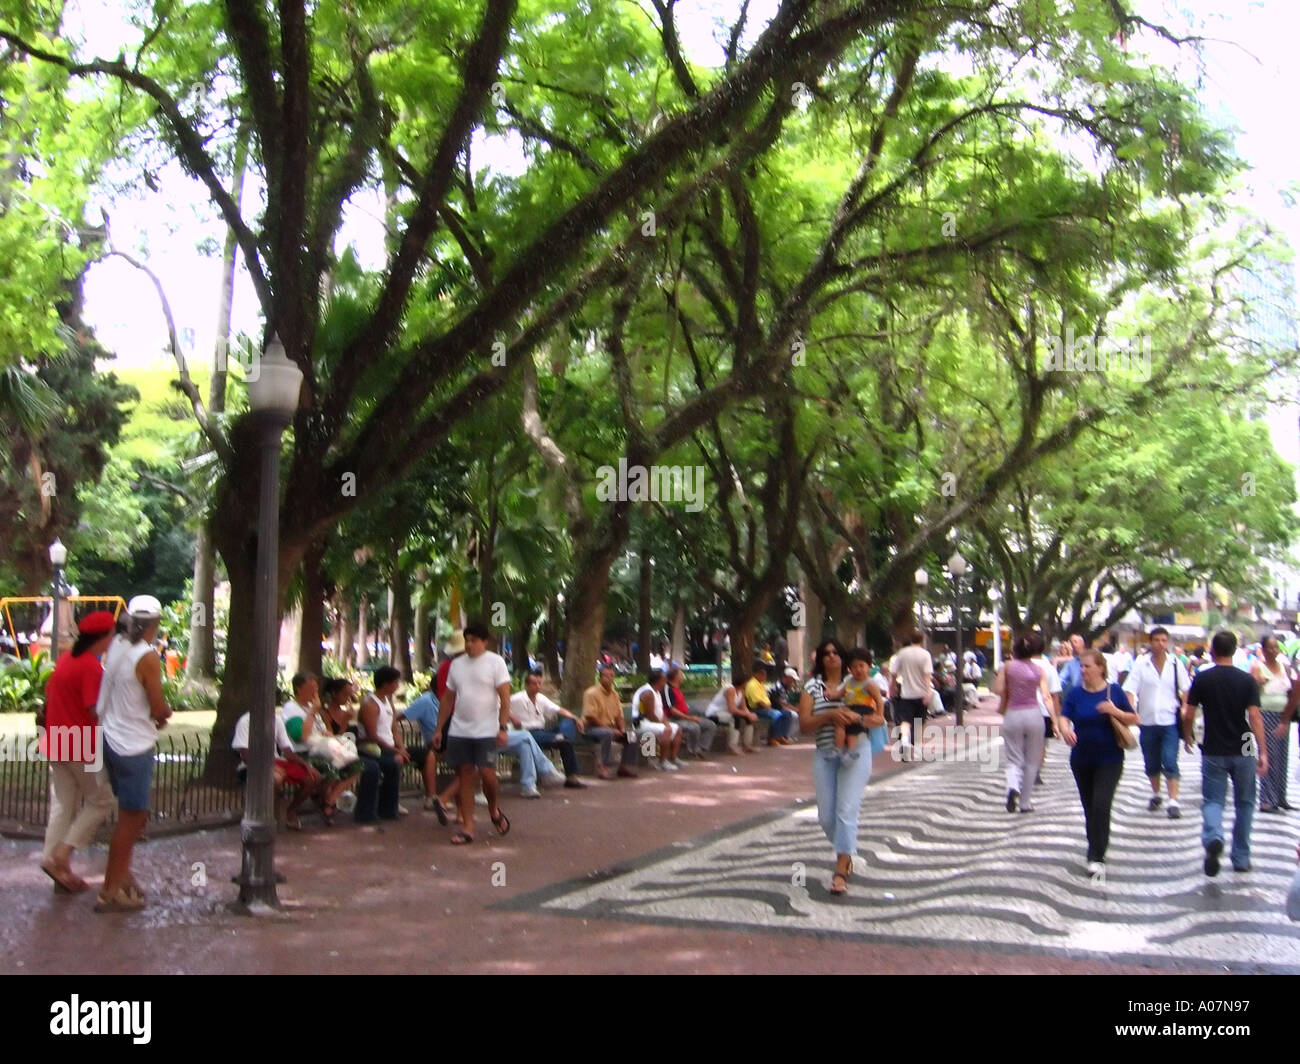 Parc en centre-ville Porto Alegre Brésil Amérique du Sud Banque D'Images